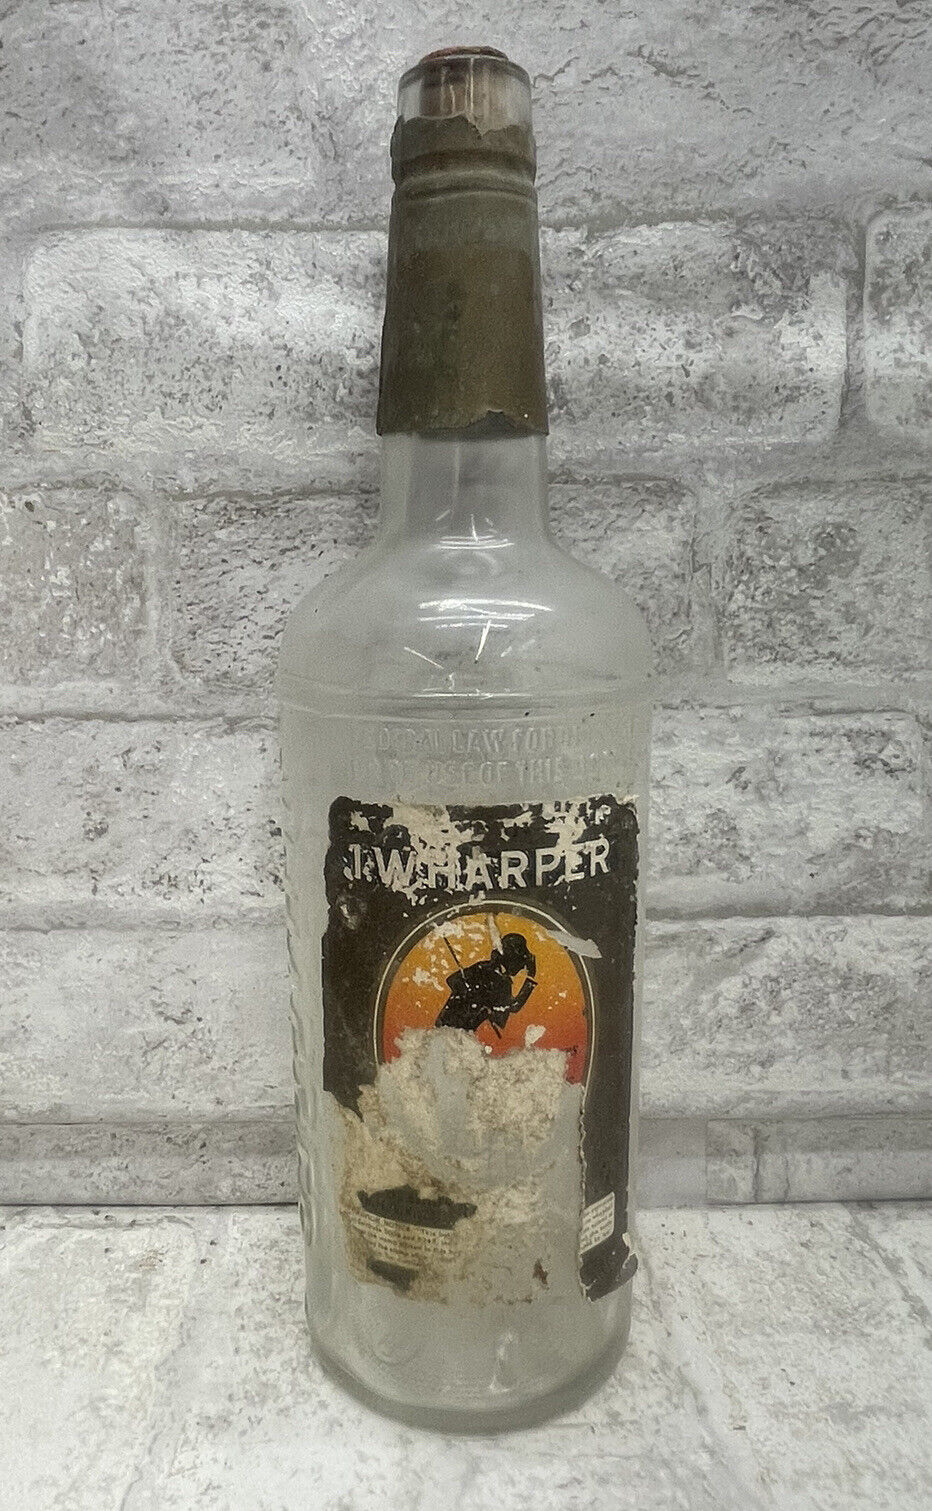 Vintage 1957 I.W. Harper Whiskey Empty Bottle